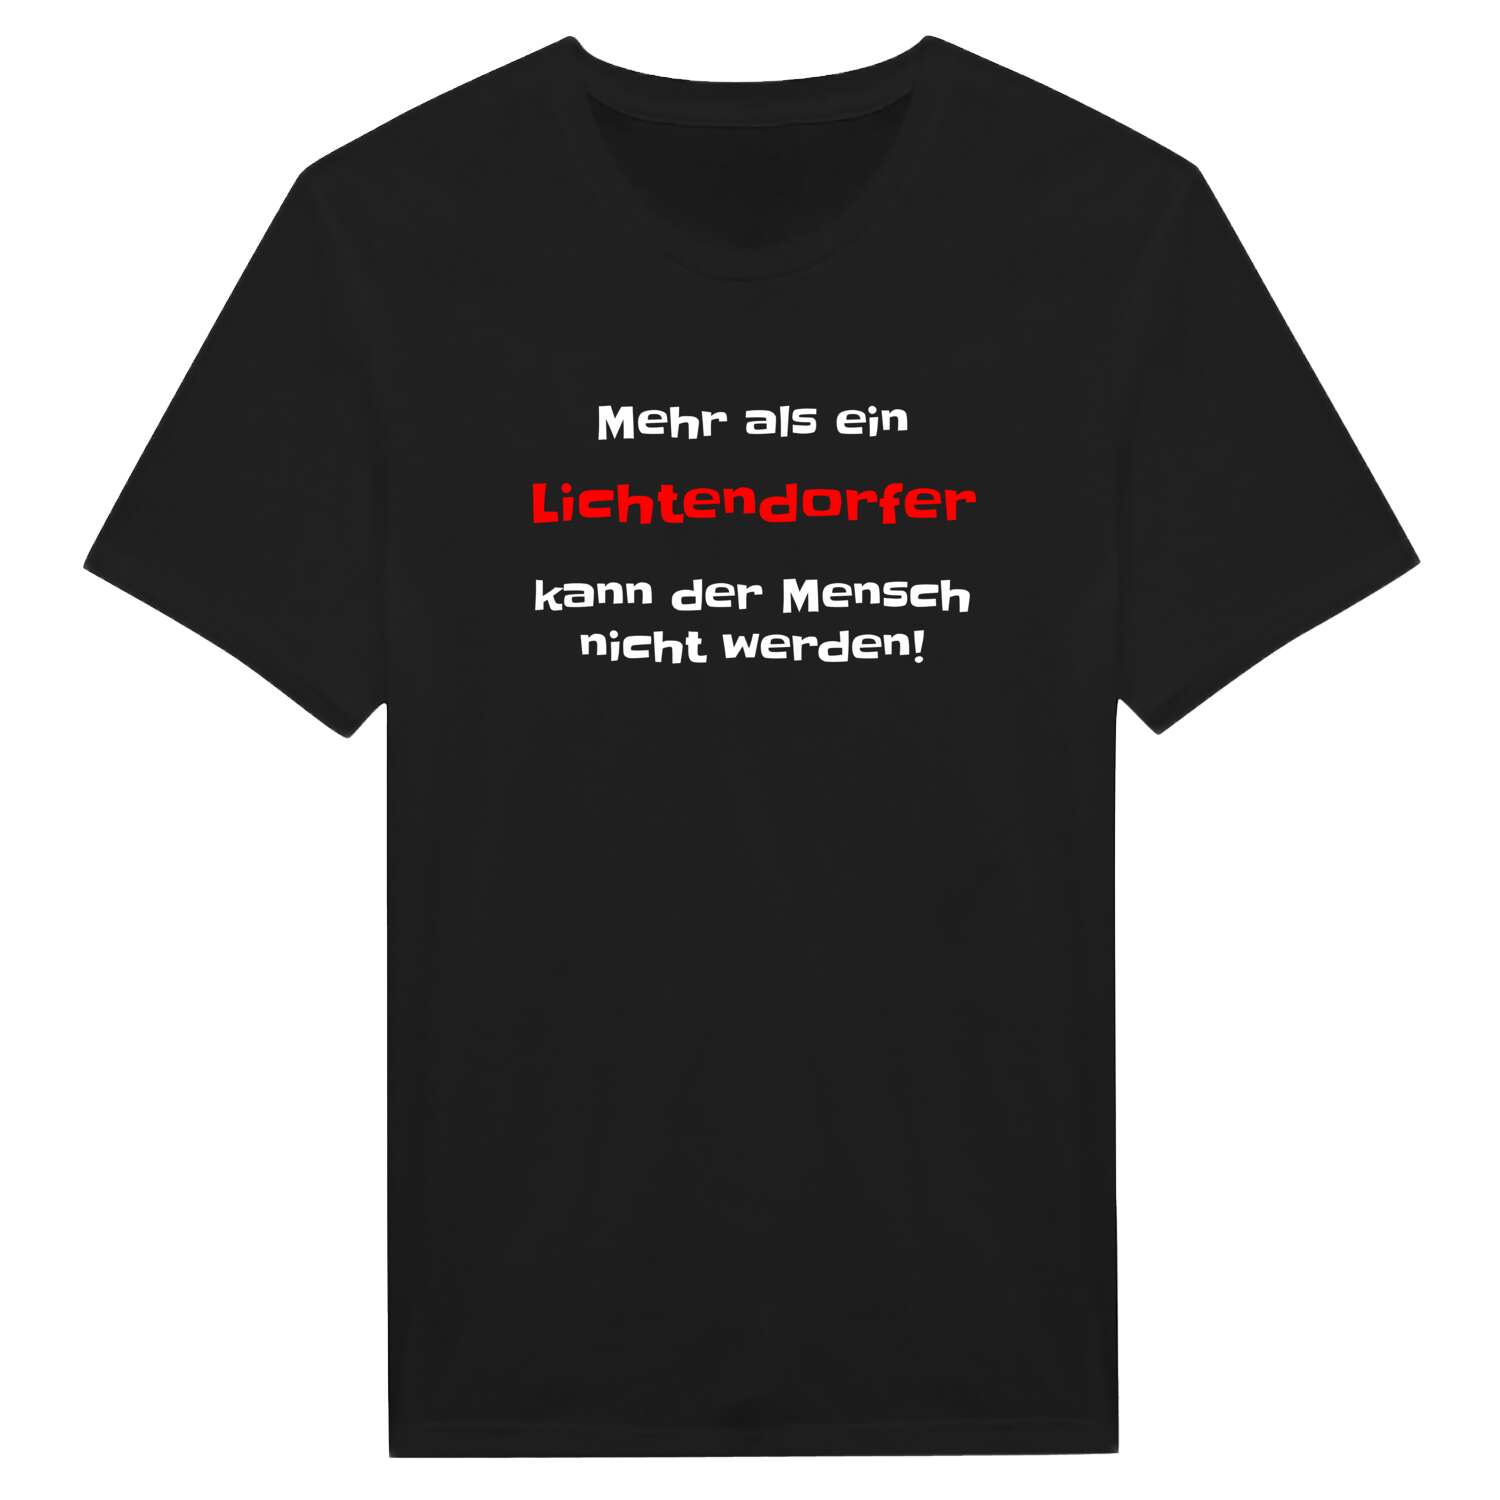 Lichtendorf T-Shirt »Mehr als ein«